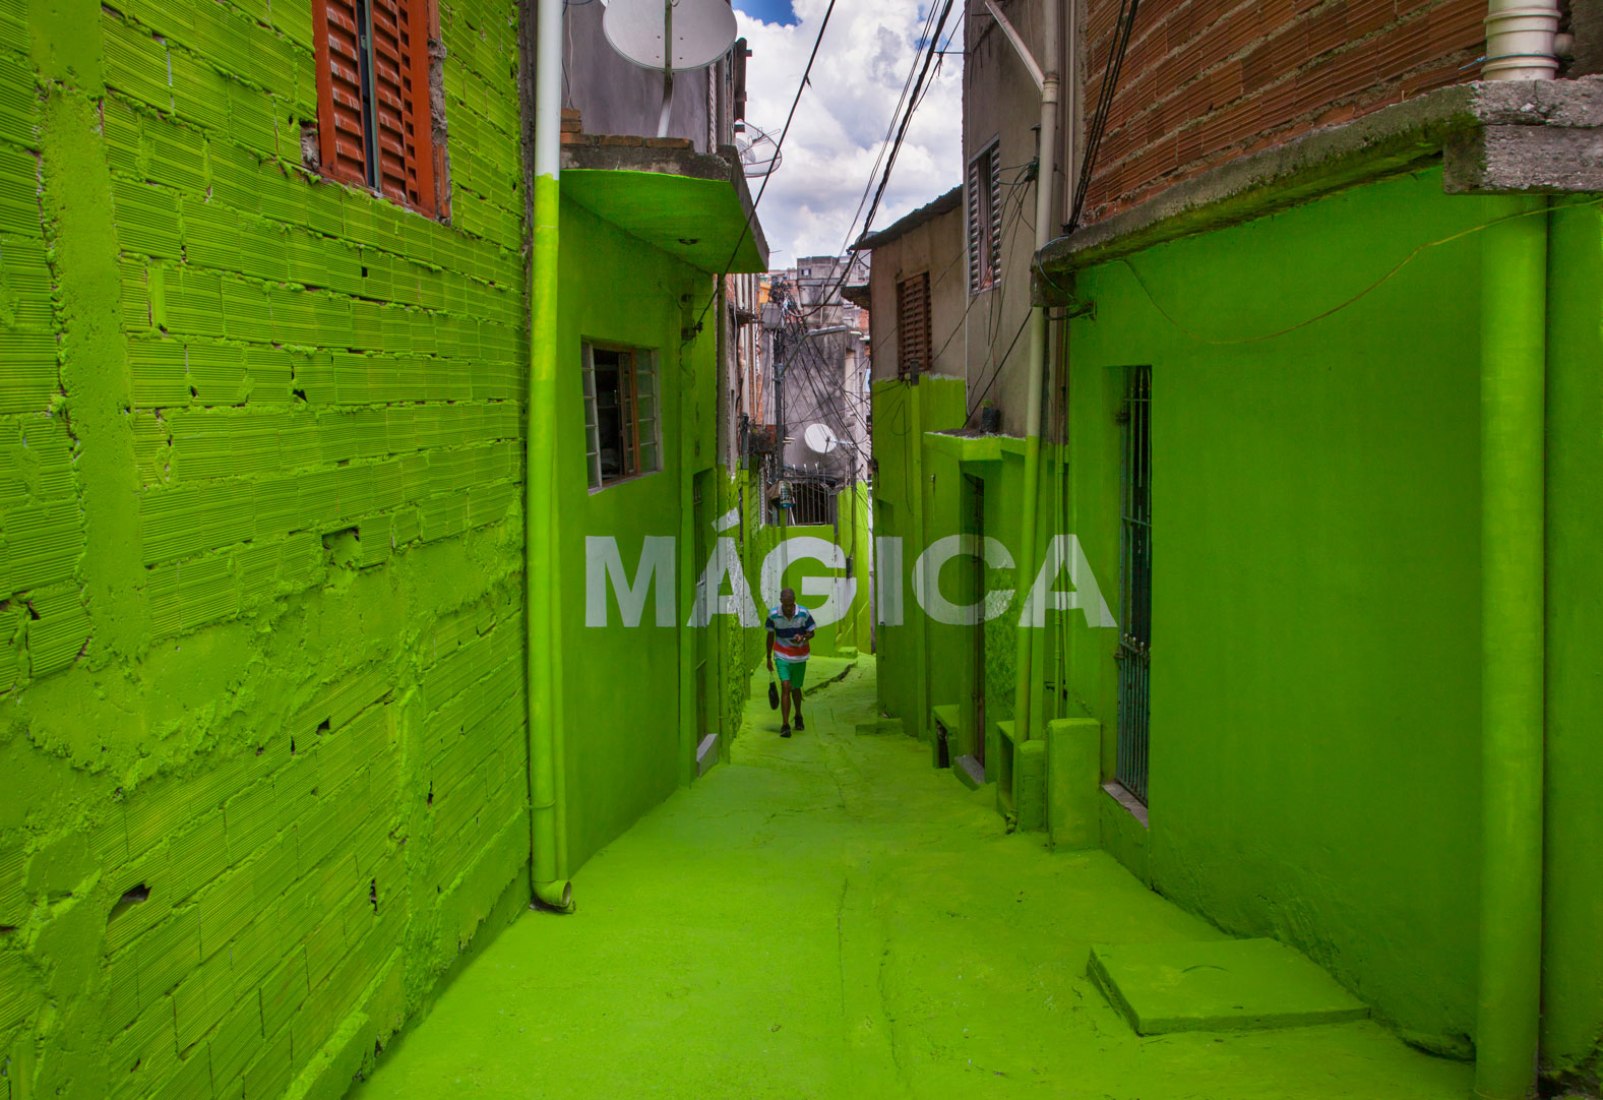 Regresamos a la favela por Boa Mistura. Imagen cortesía de Boa Mistura.